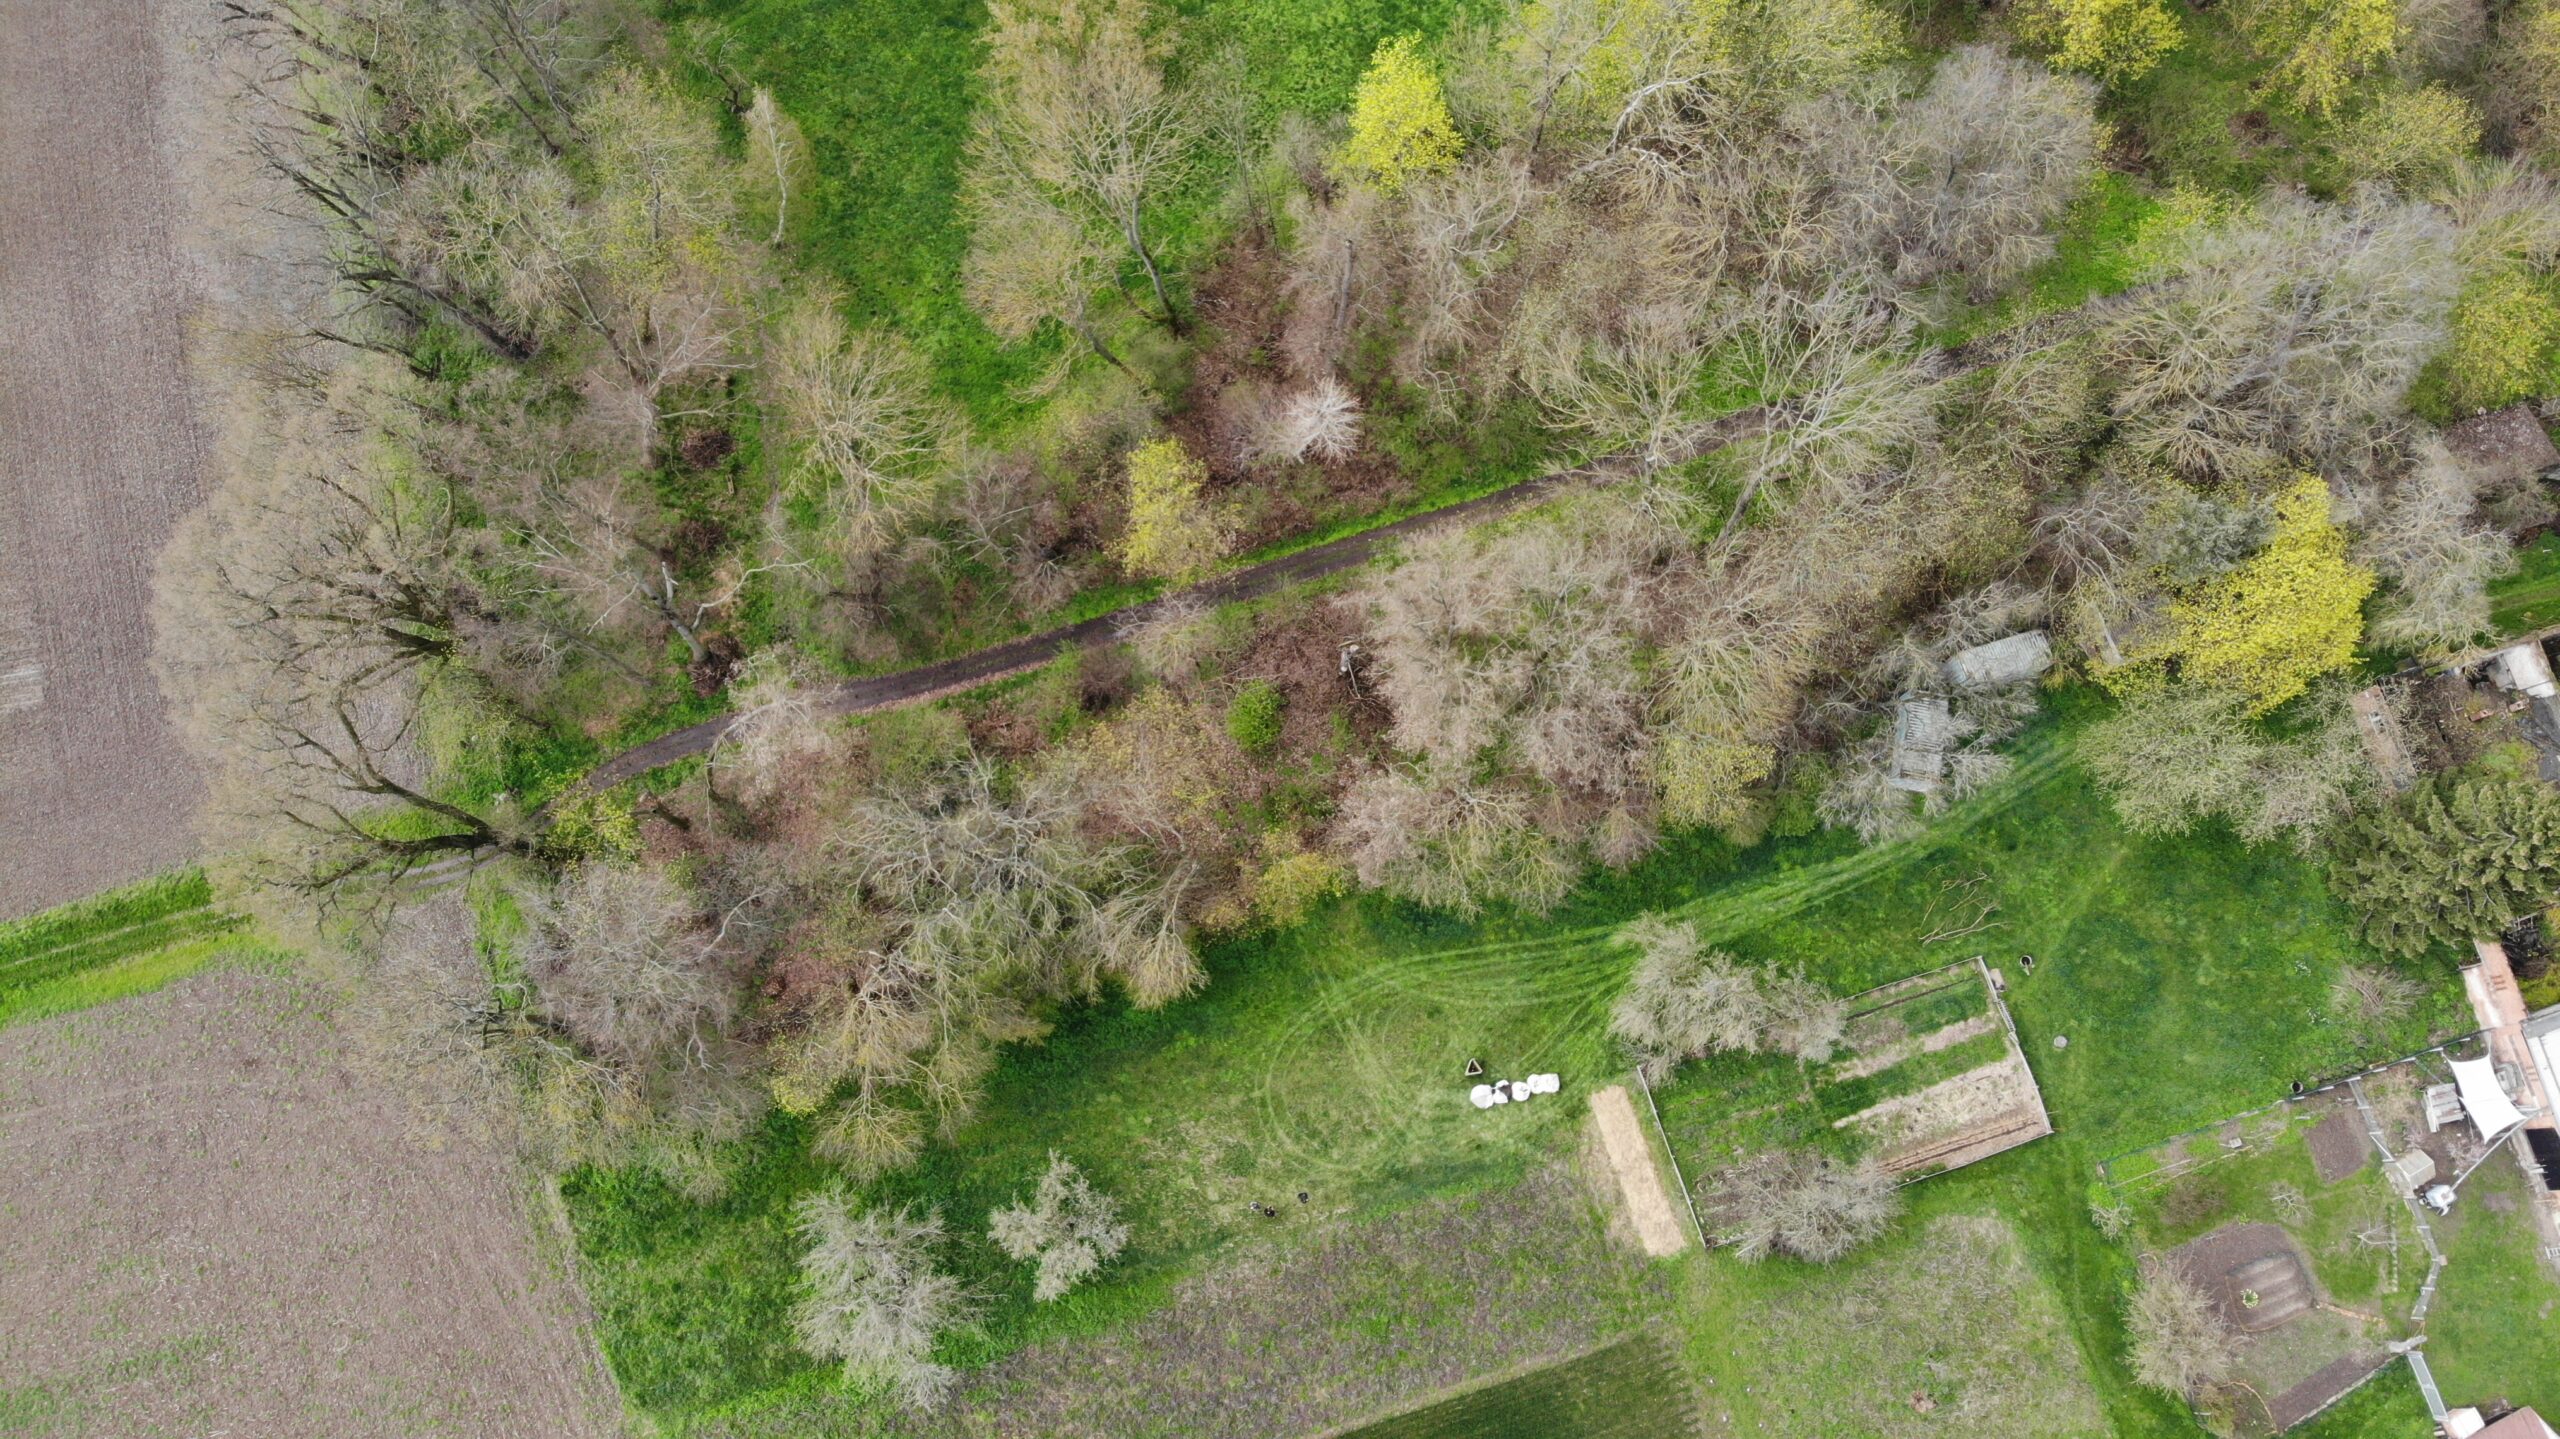 Luftbild eines lockeren Waldes mit umgebenden Feldern, Jäckels Aufbruch